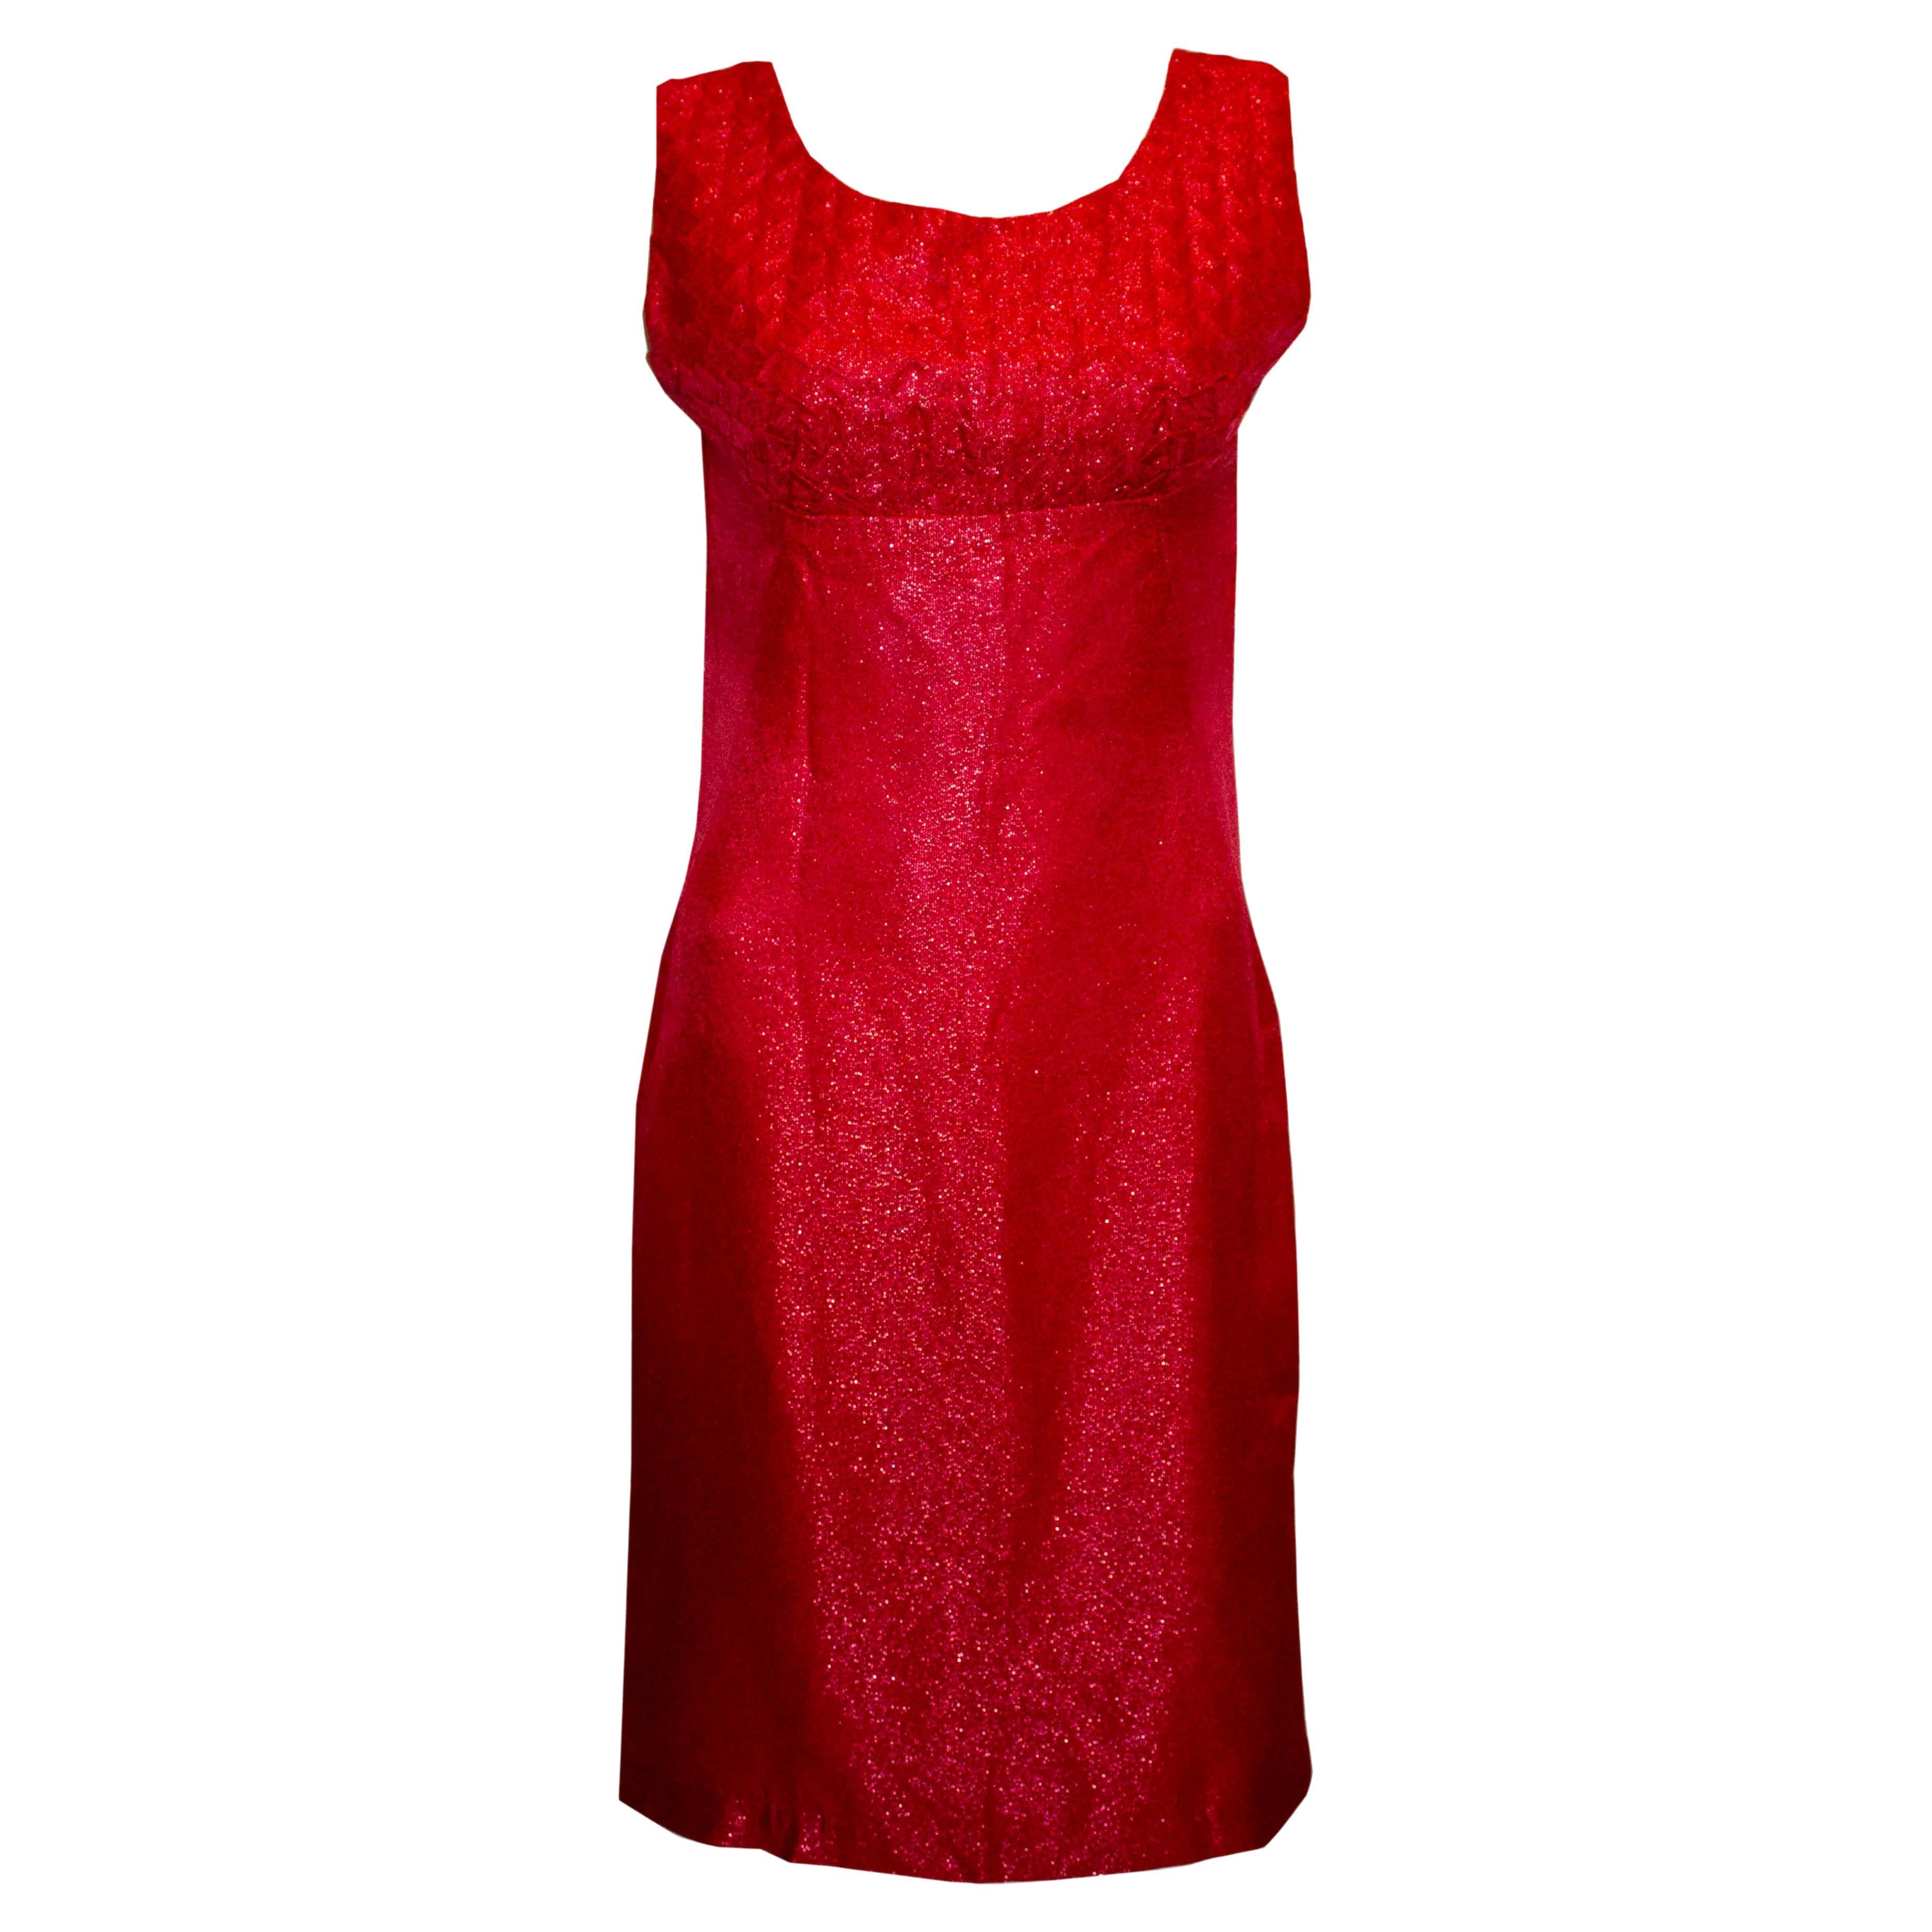 Vintage Red Cocktail Dress